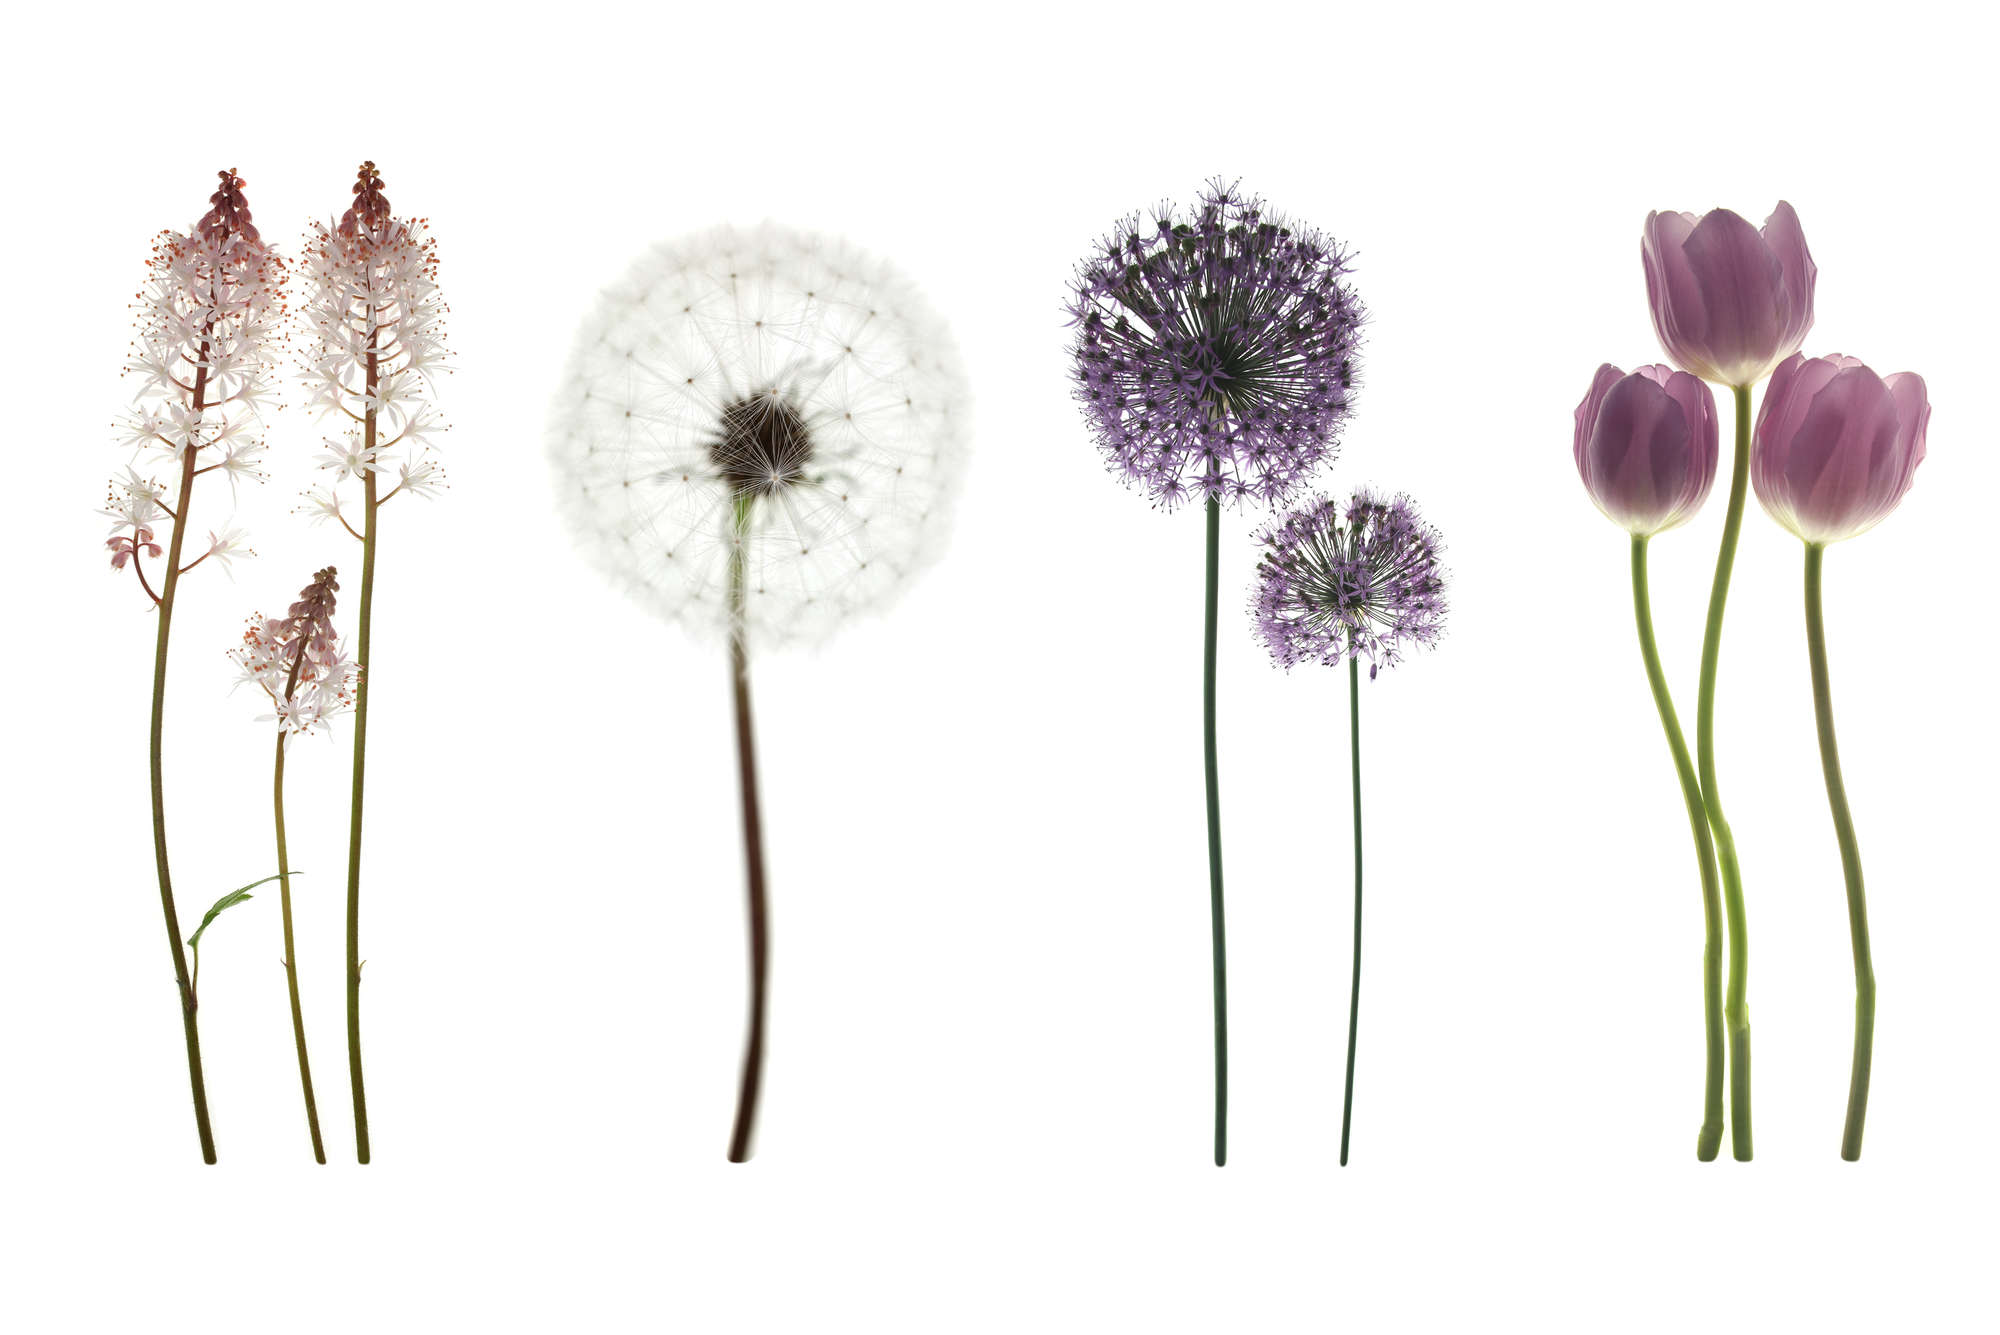             Fototapete mit Blumenvielfalt – Strukturiertes Vlies
        